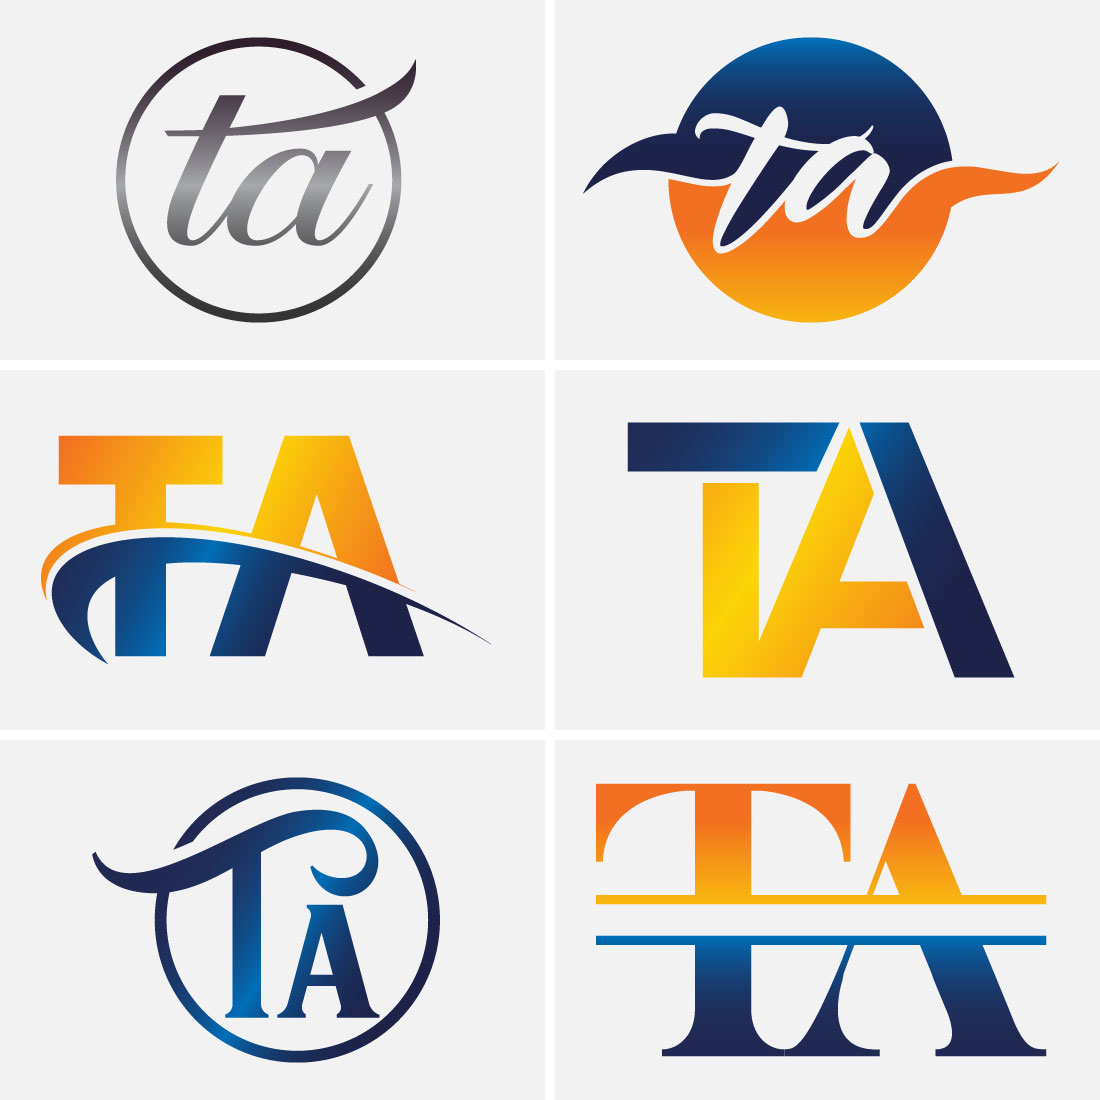 Ta-Ta, Logopedia